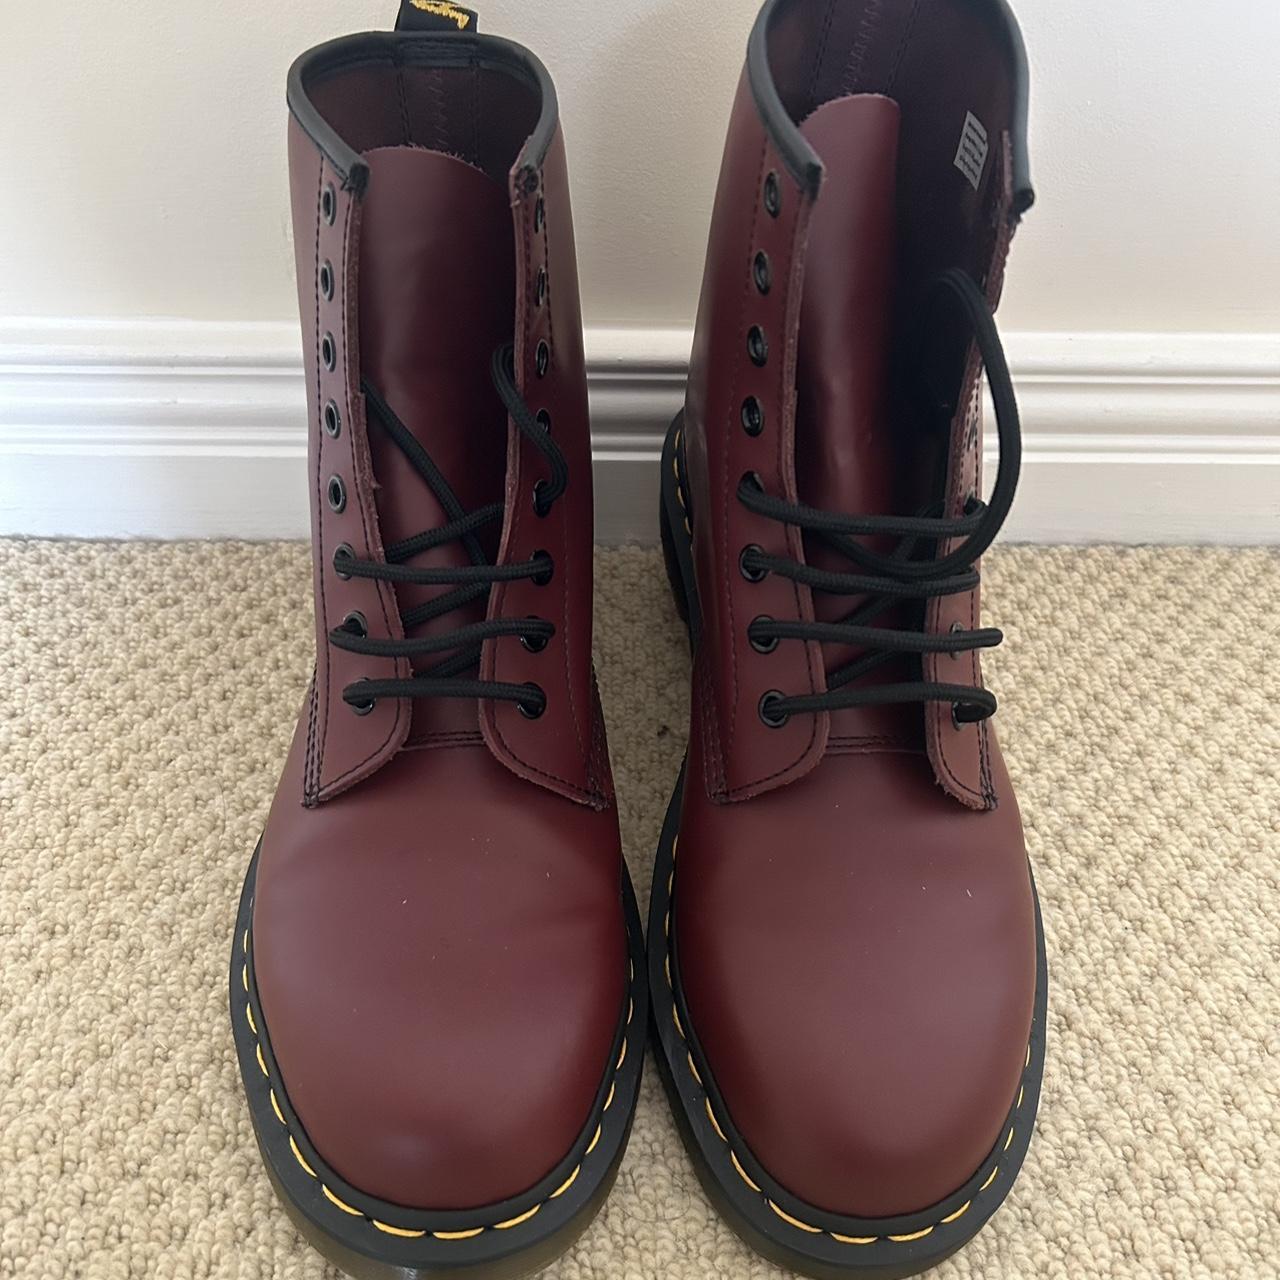 NEW cherry red doc marten boots 🍒 Men’s size UK 9... - Depop